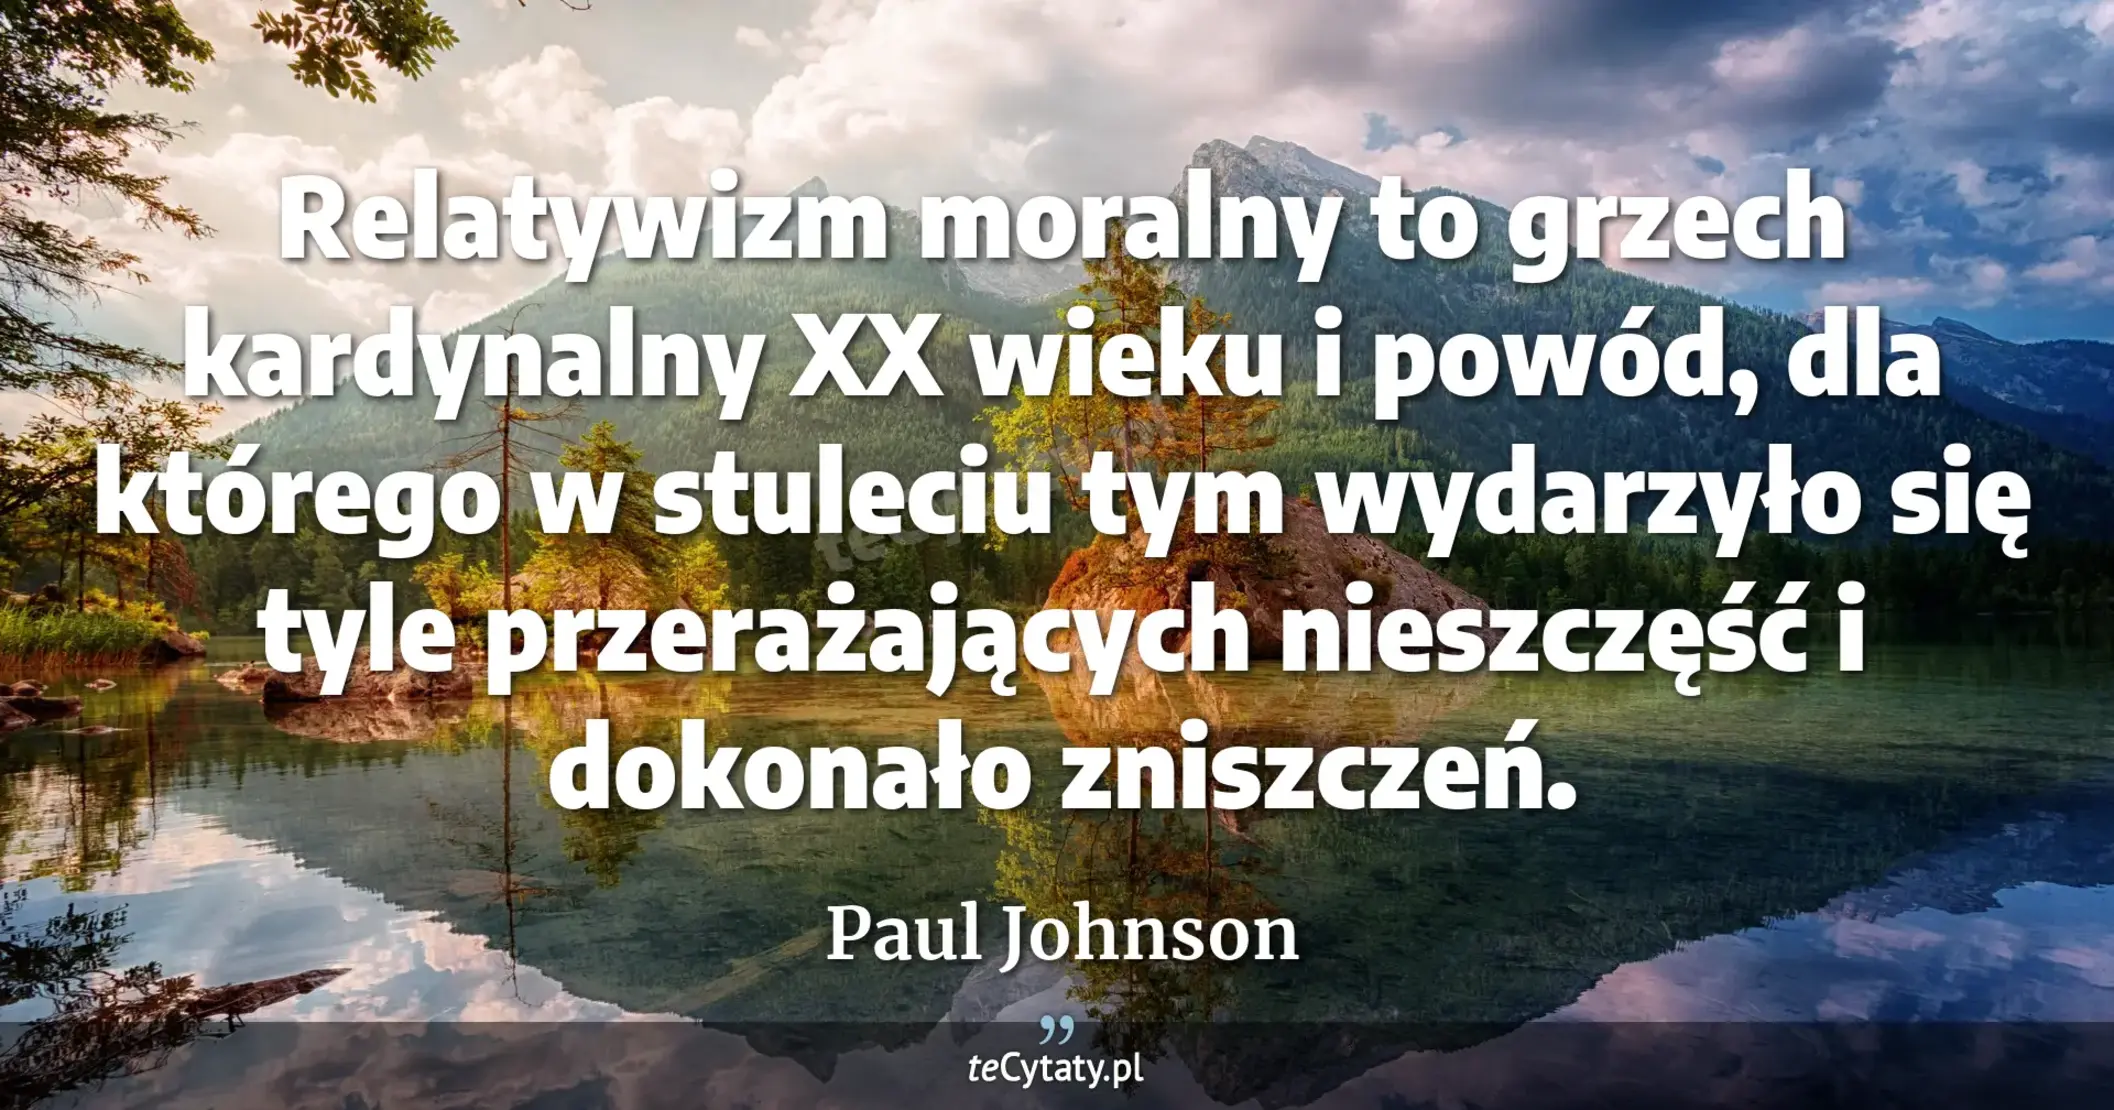 Relatywizm moralny to grzech kardynalny XX wieku i powód, dla którego w stuleciu tym wydarzyło się tyle przerażających nieszczęść i dokonało zniszczeń. - Paul Johnson